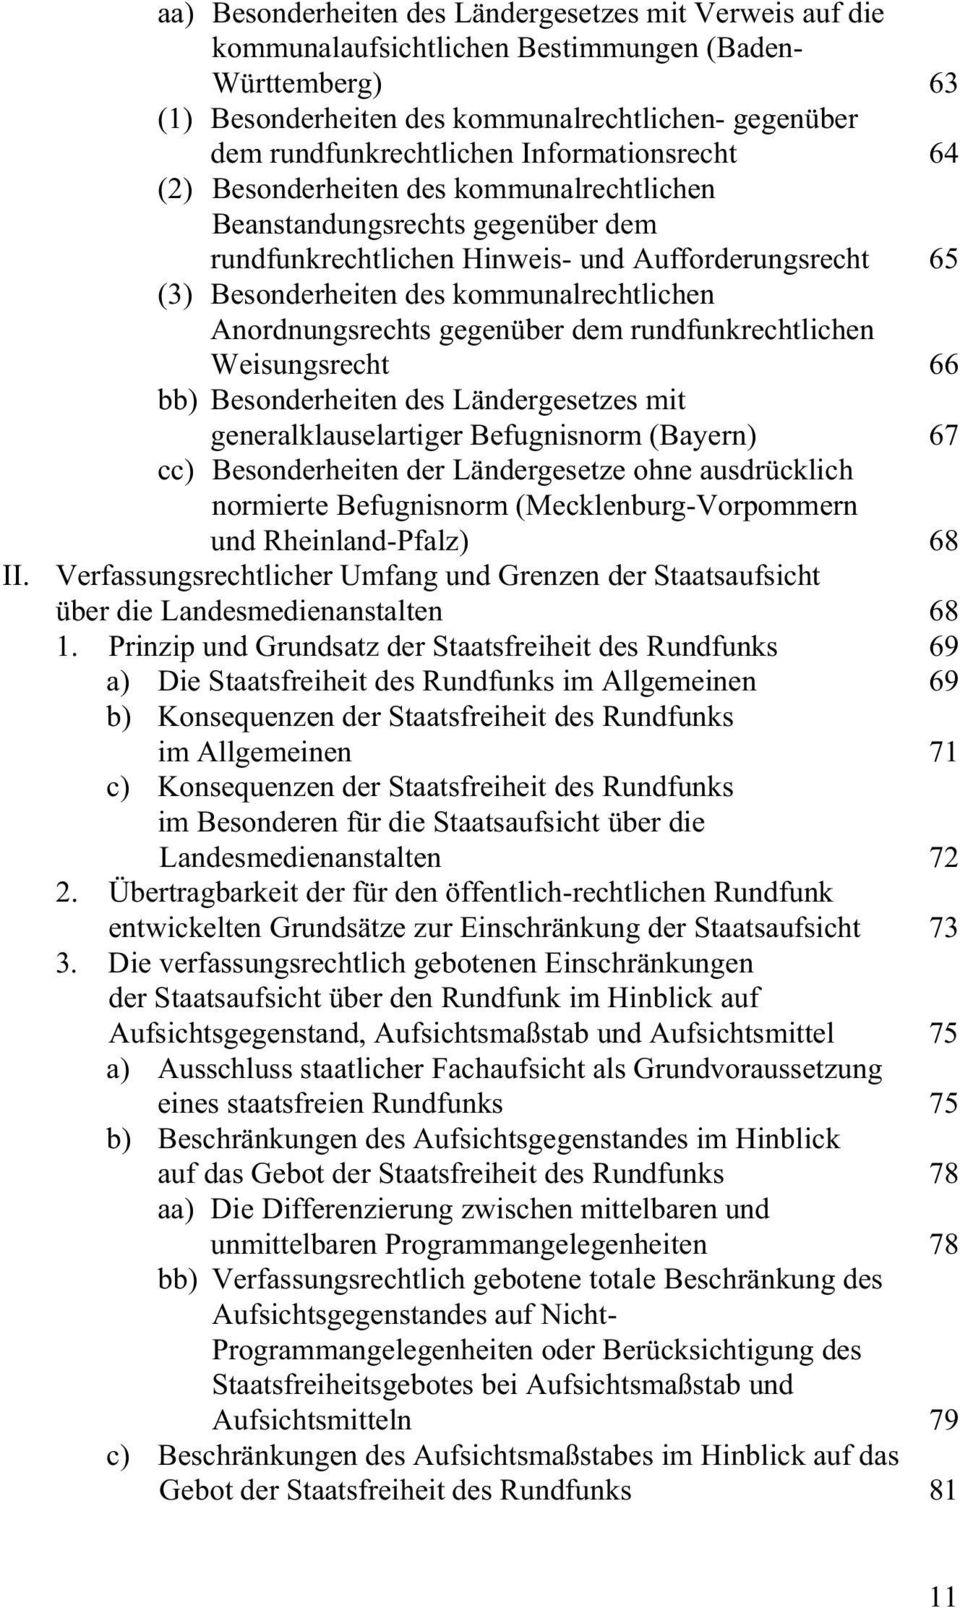 Anordnungsrechts gegenüber dem rundfunkrechtlichen Weisungsrecht 66 bb) Besonderheiten des Ländergesetzes mit generalklauselartiger Befugnisnorm (Bayern) 67 cc) Besonderheiten der Ländergesetze ohne